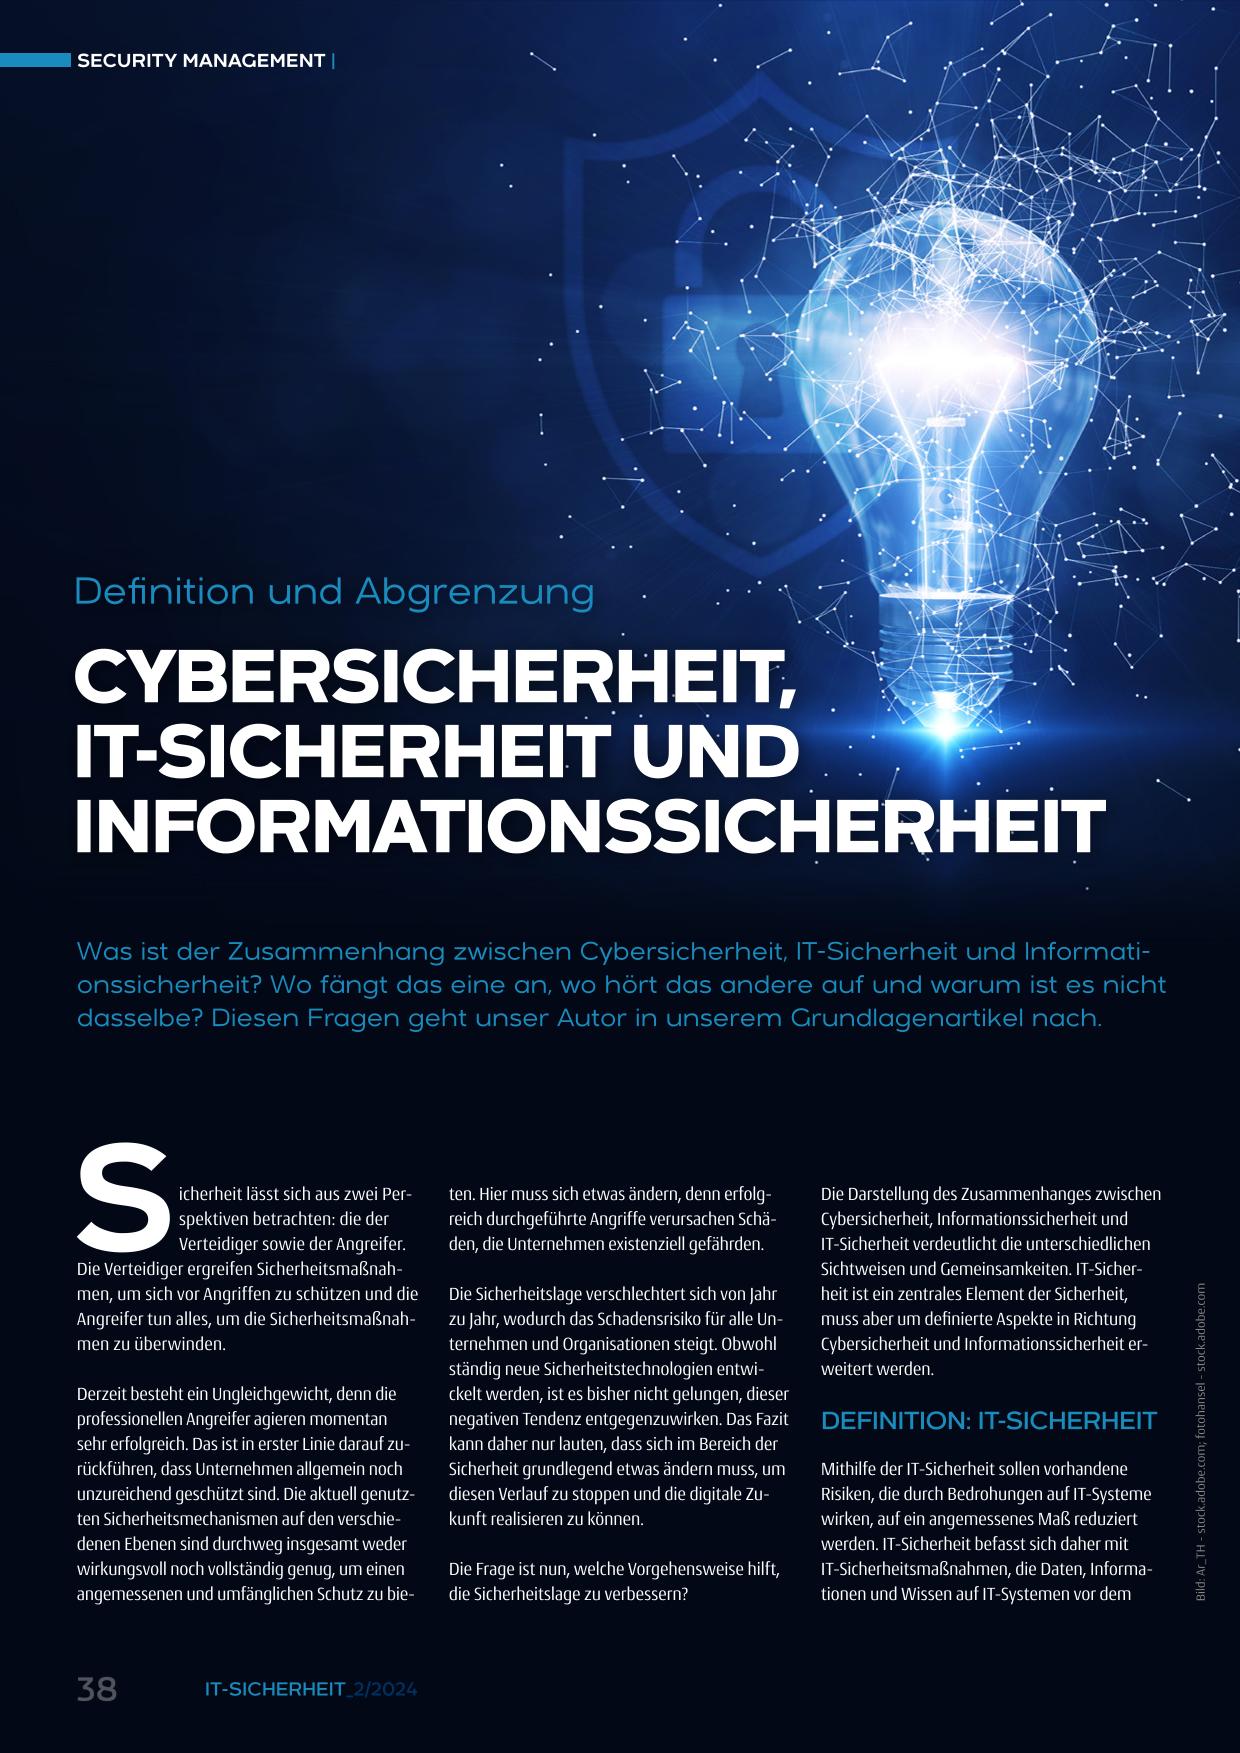 Cybersicherheit, IT-Sicherheit und Informationssicherheit - Definition und Abgrenzung